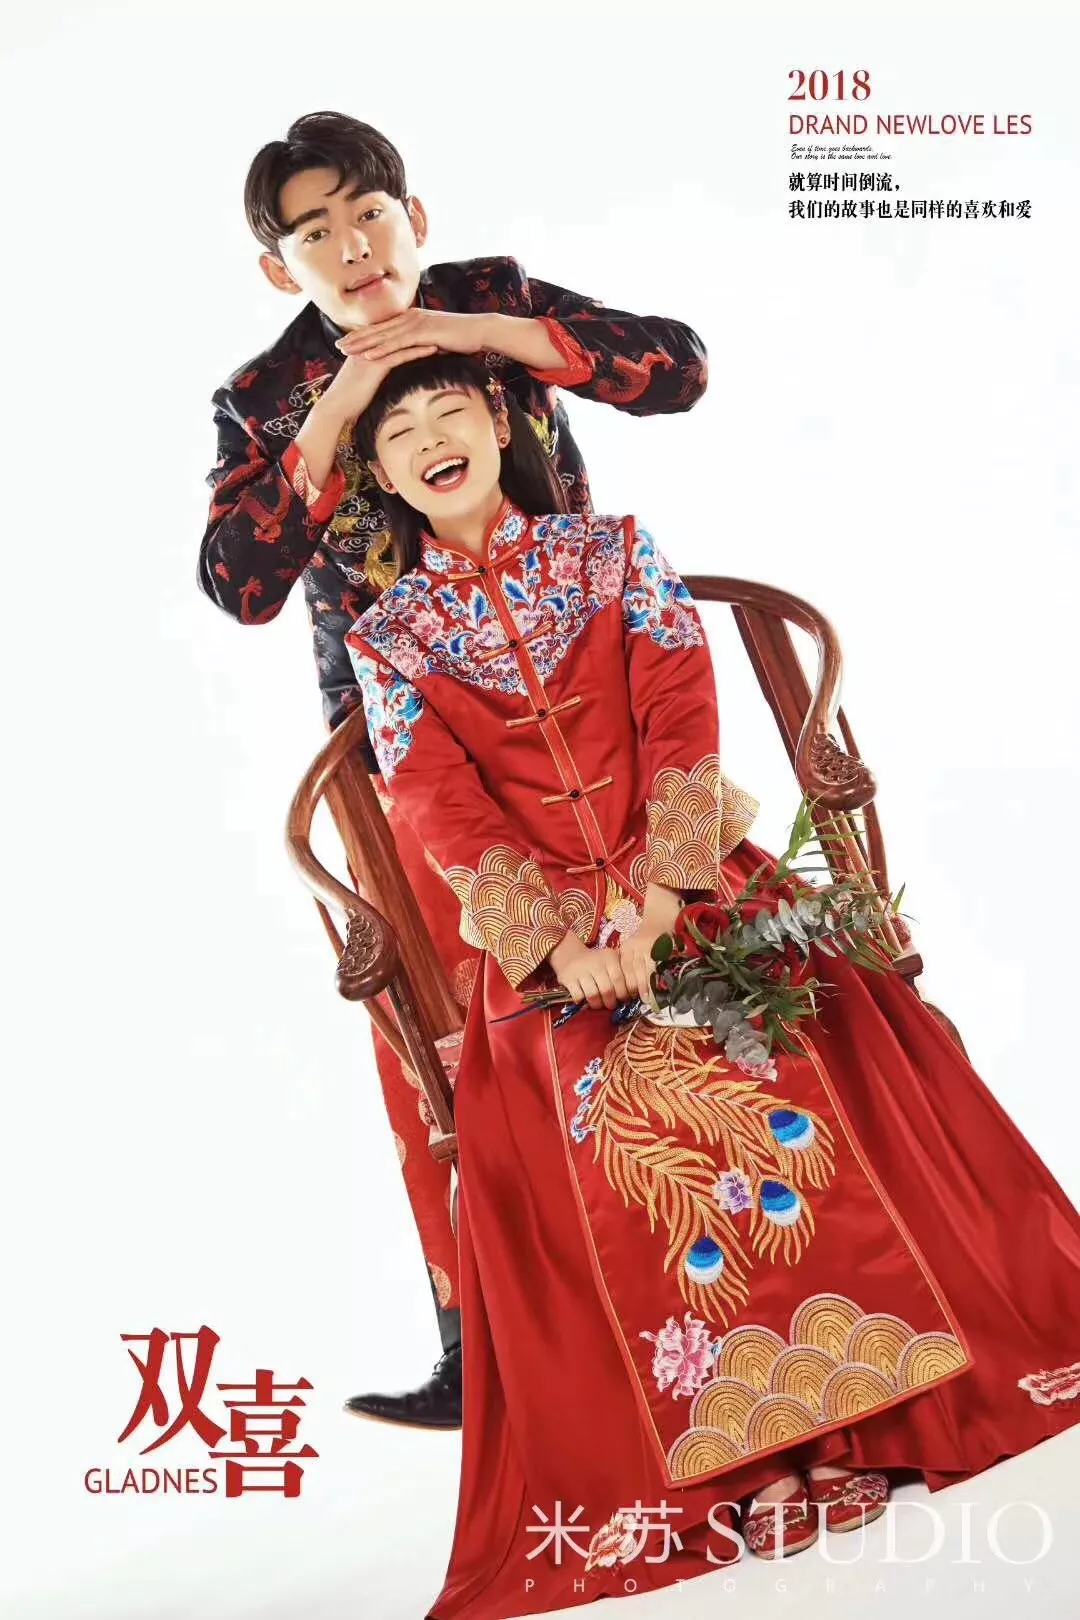 一定要拍一组有趣的中国风婚纱照